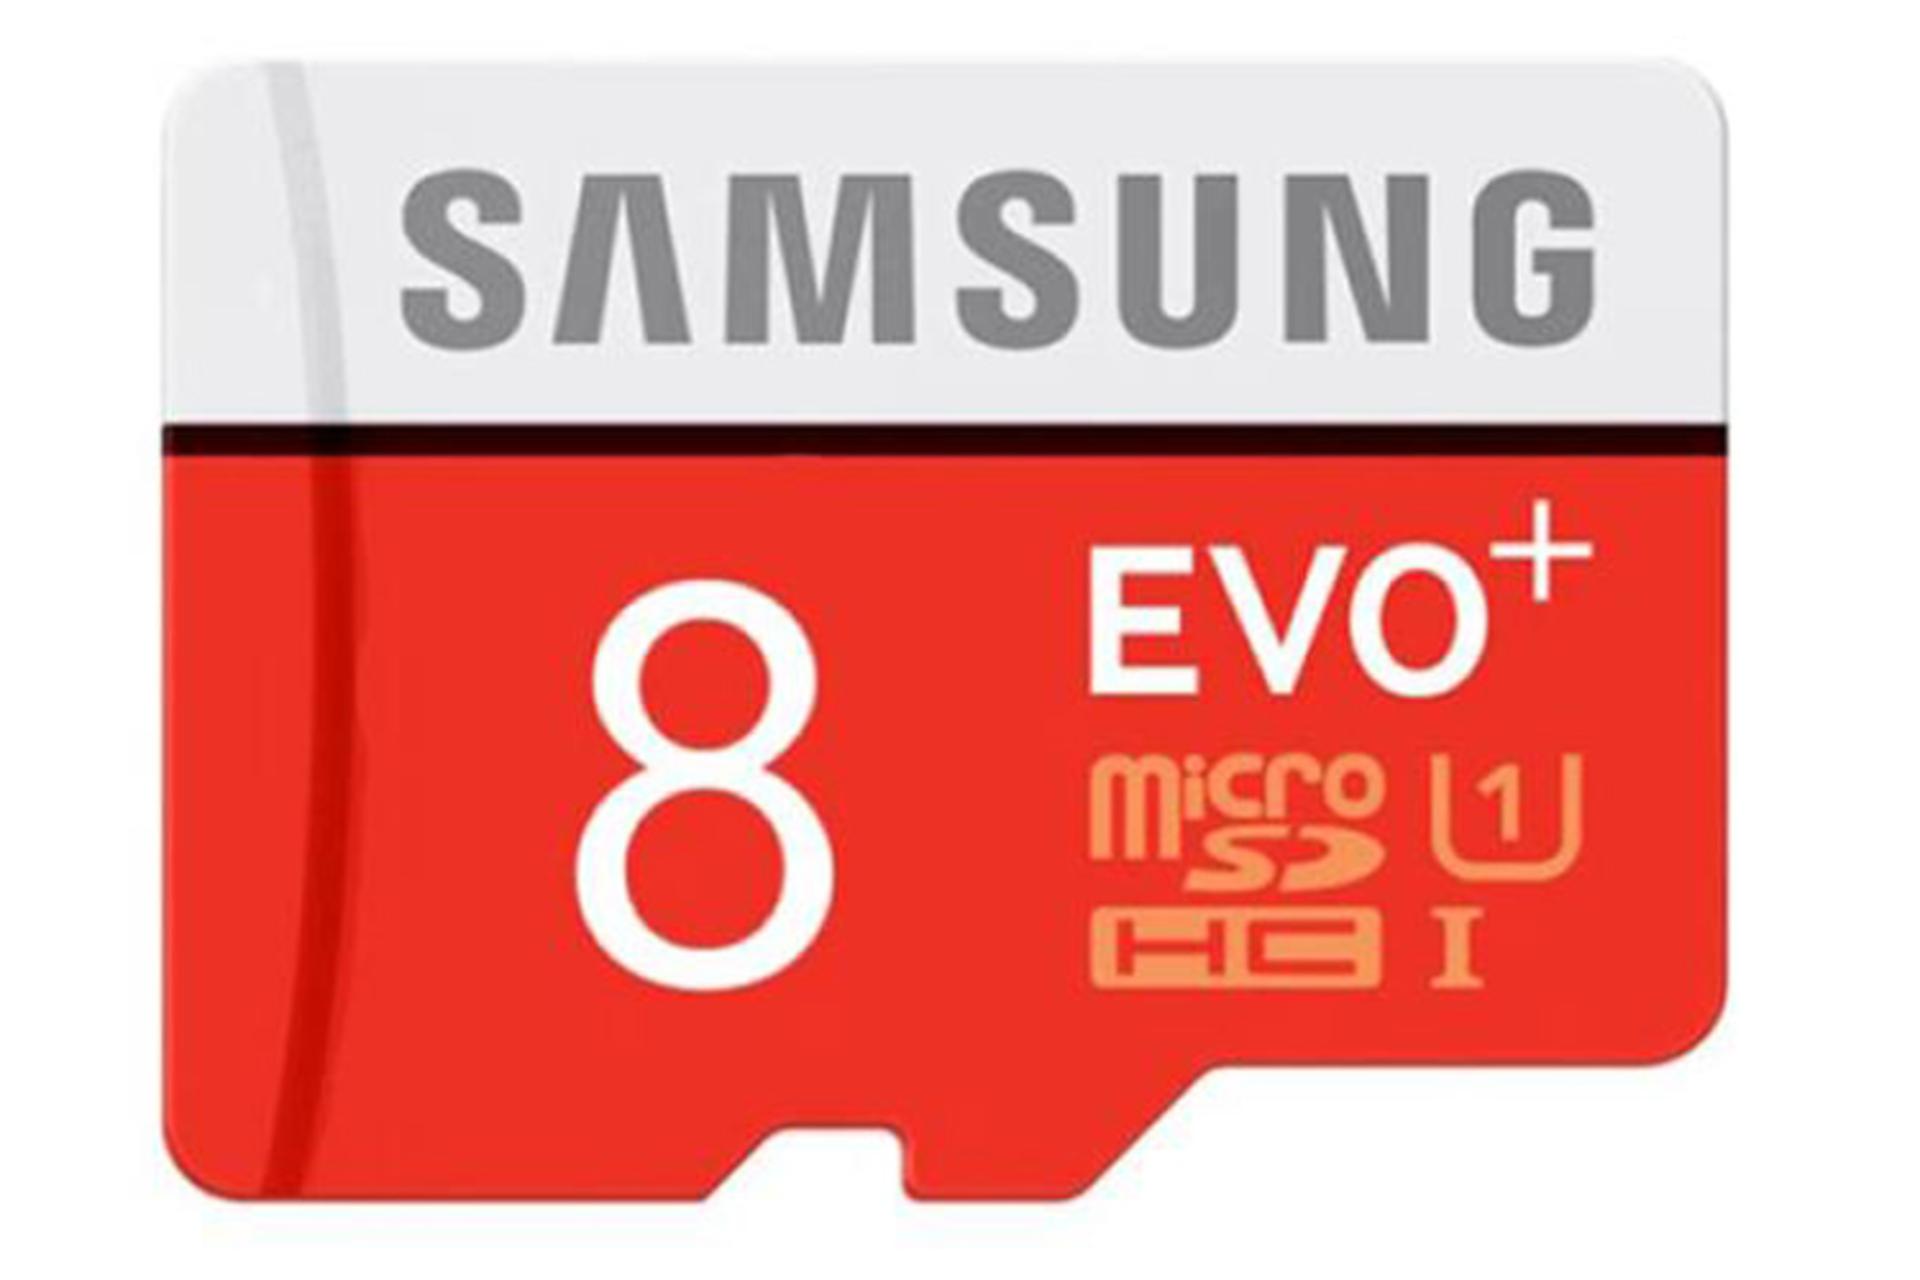 مرجع متخصصين ايران كارت حافظه سامسونگ microSDHC با ظرفيت 8 گيگابايت مدل Evo Plus كلاس 10